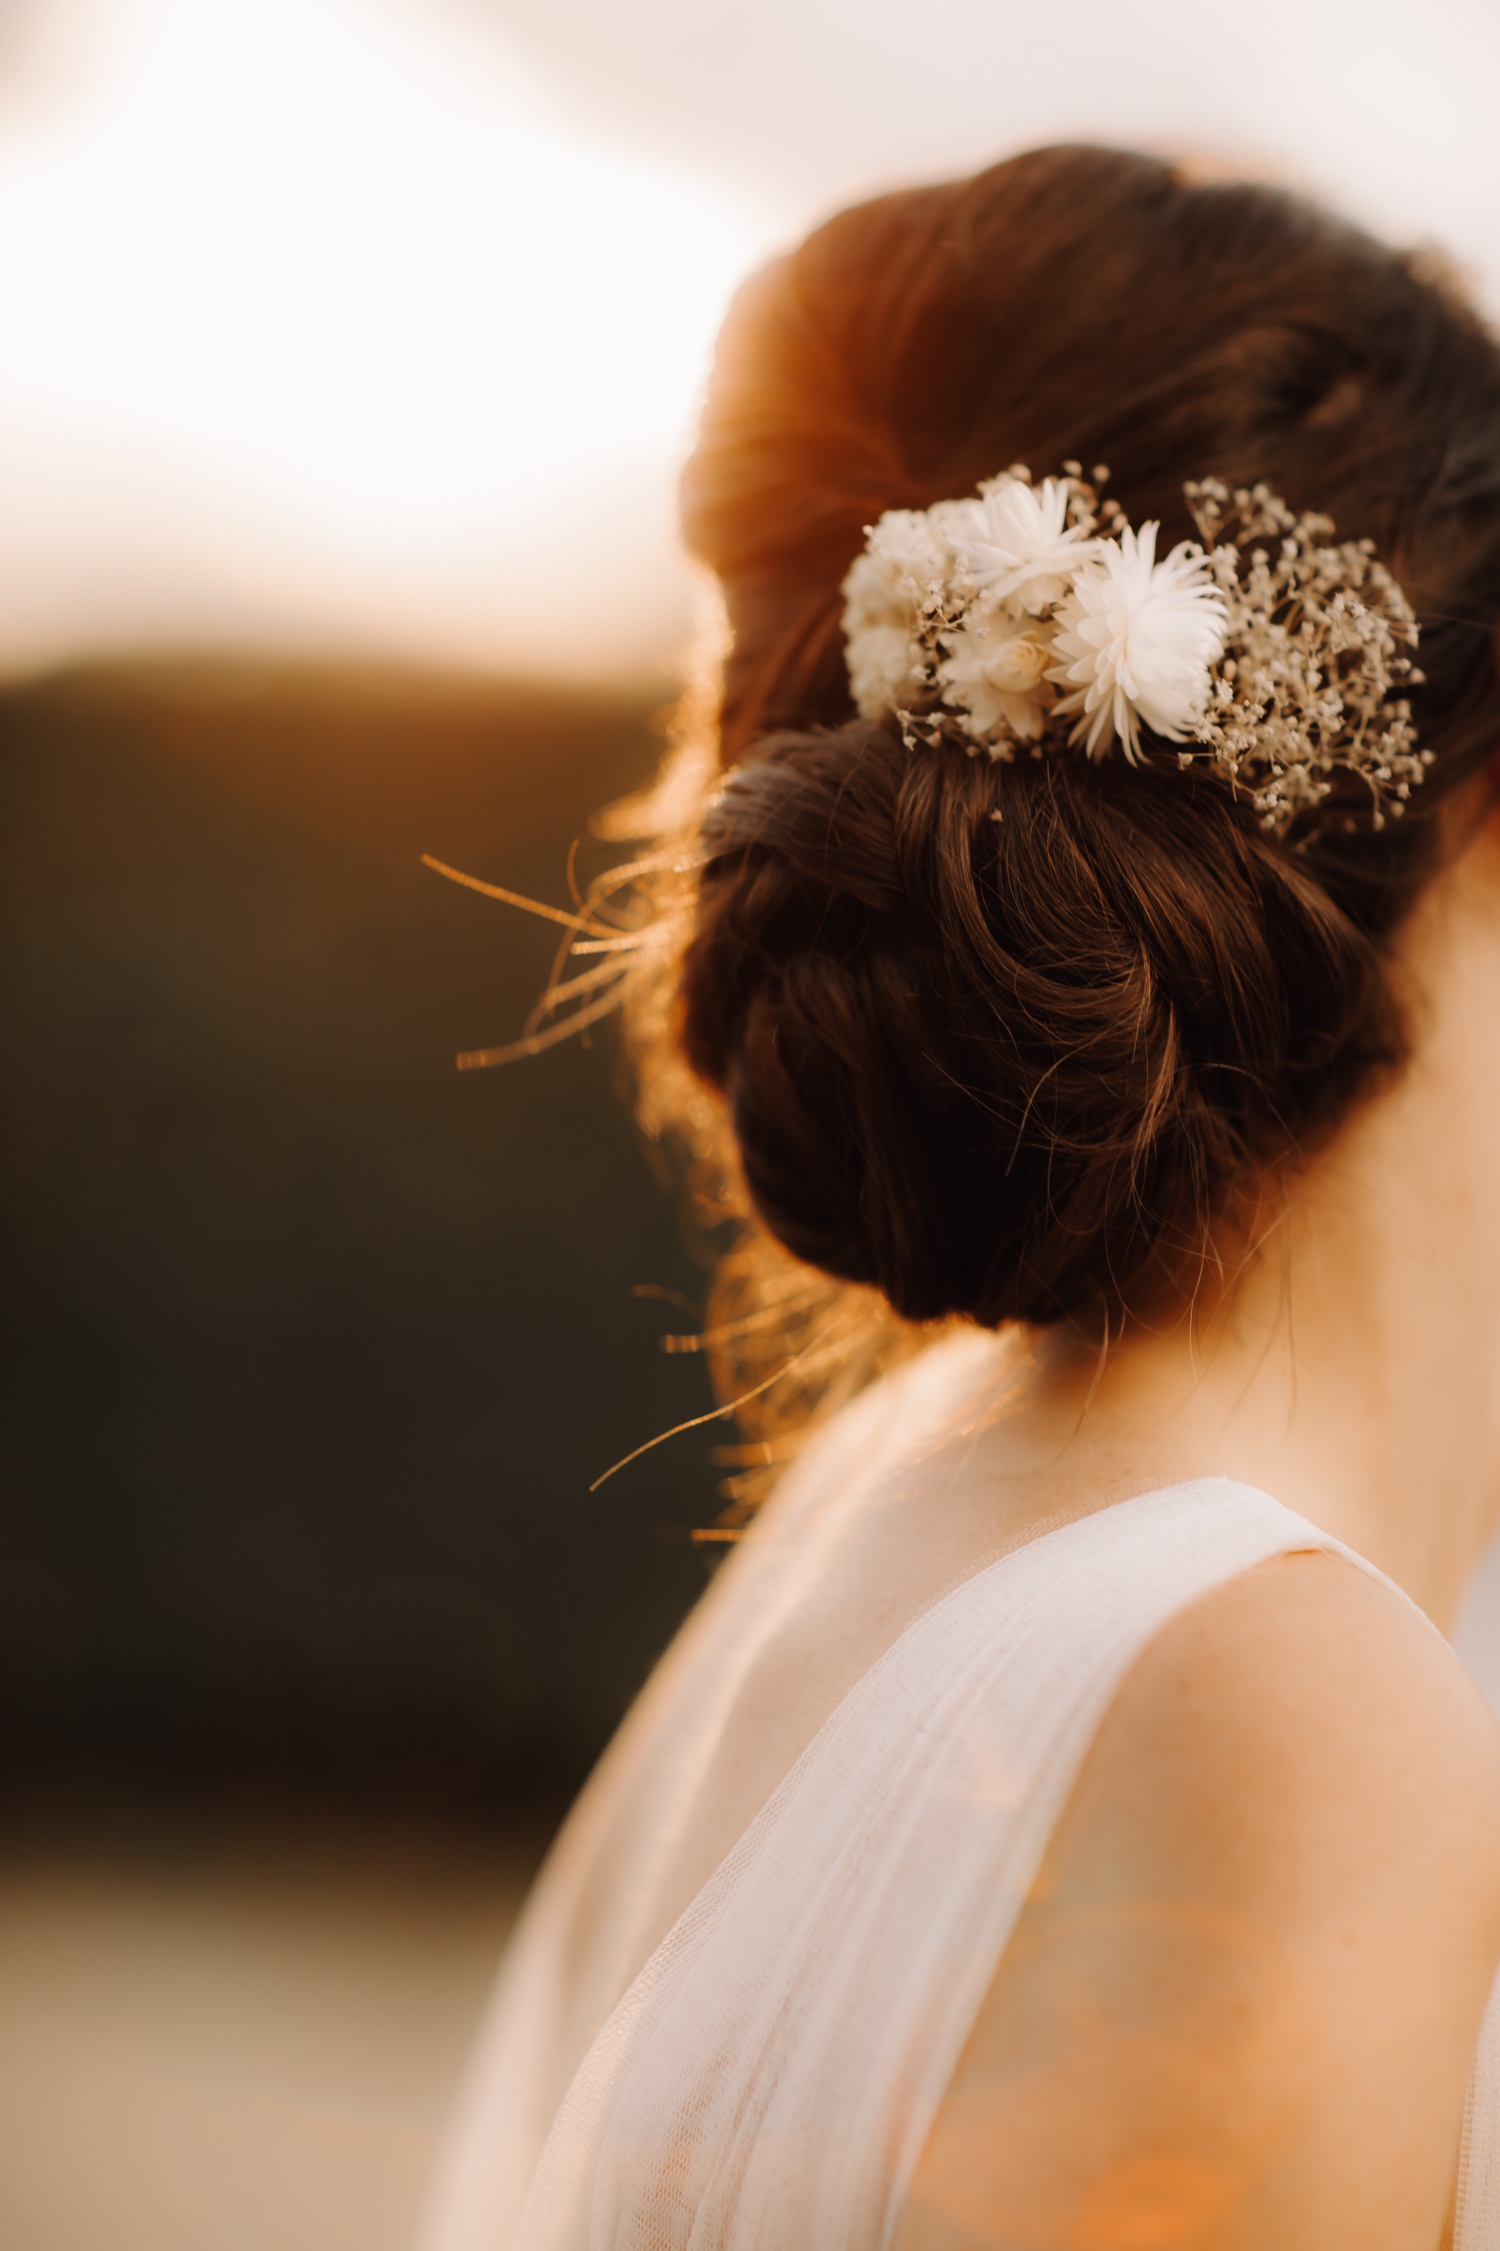 Huwelijksfotograaf Limburg - detailfoto van het zonlicht dat door het haar van de bruid schijnt